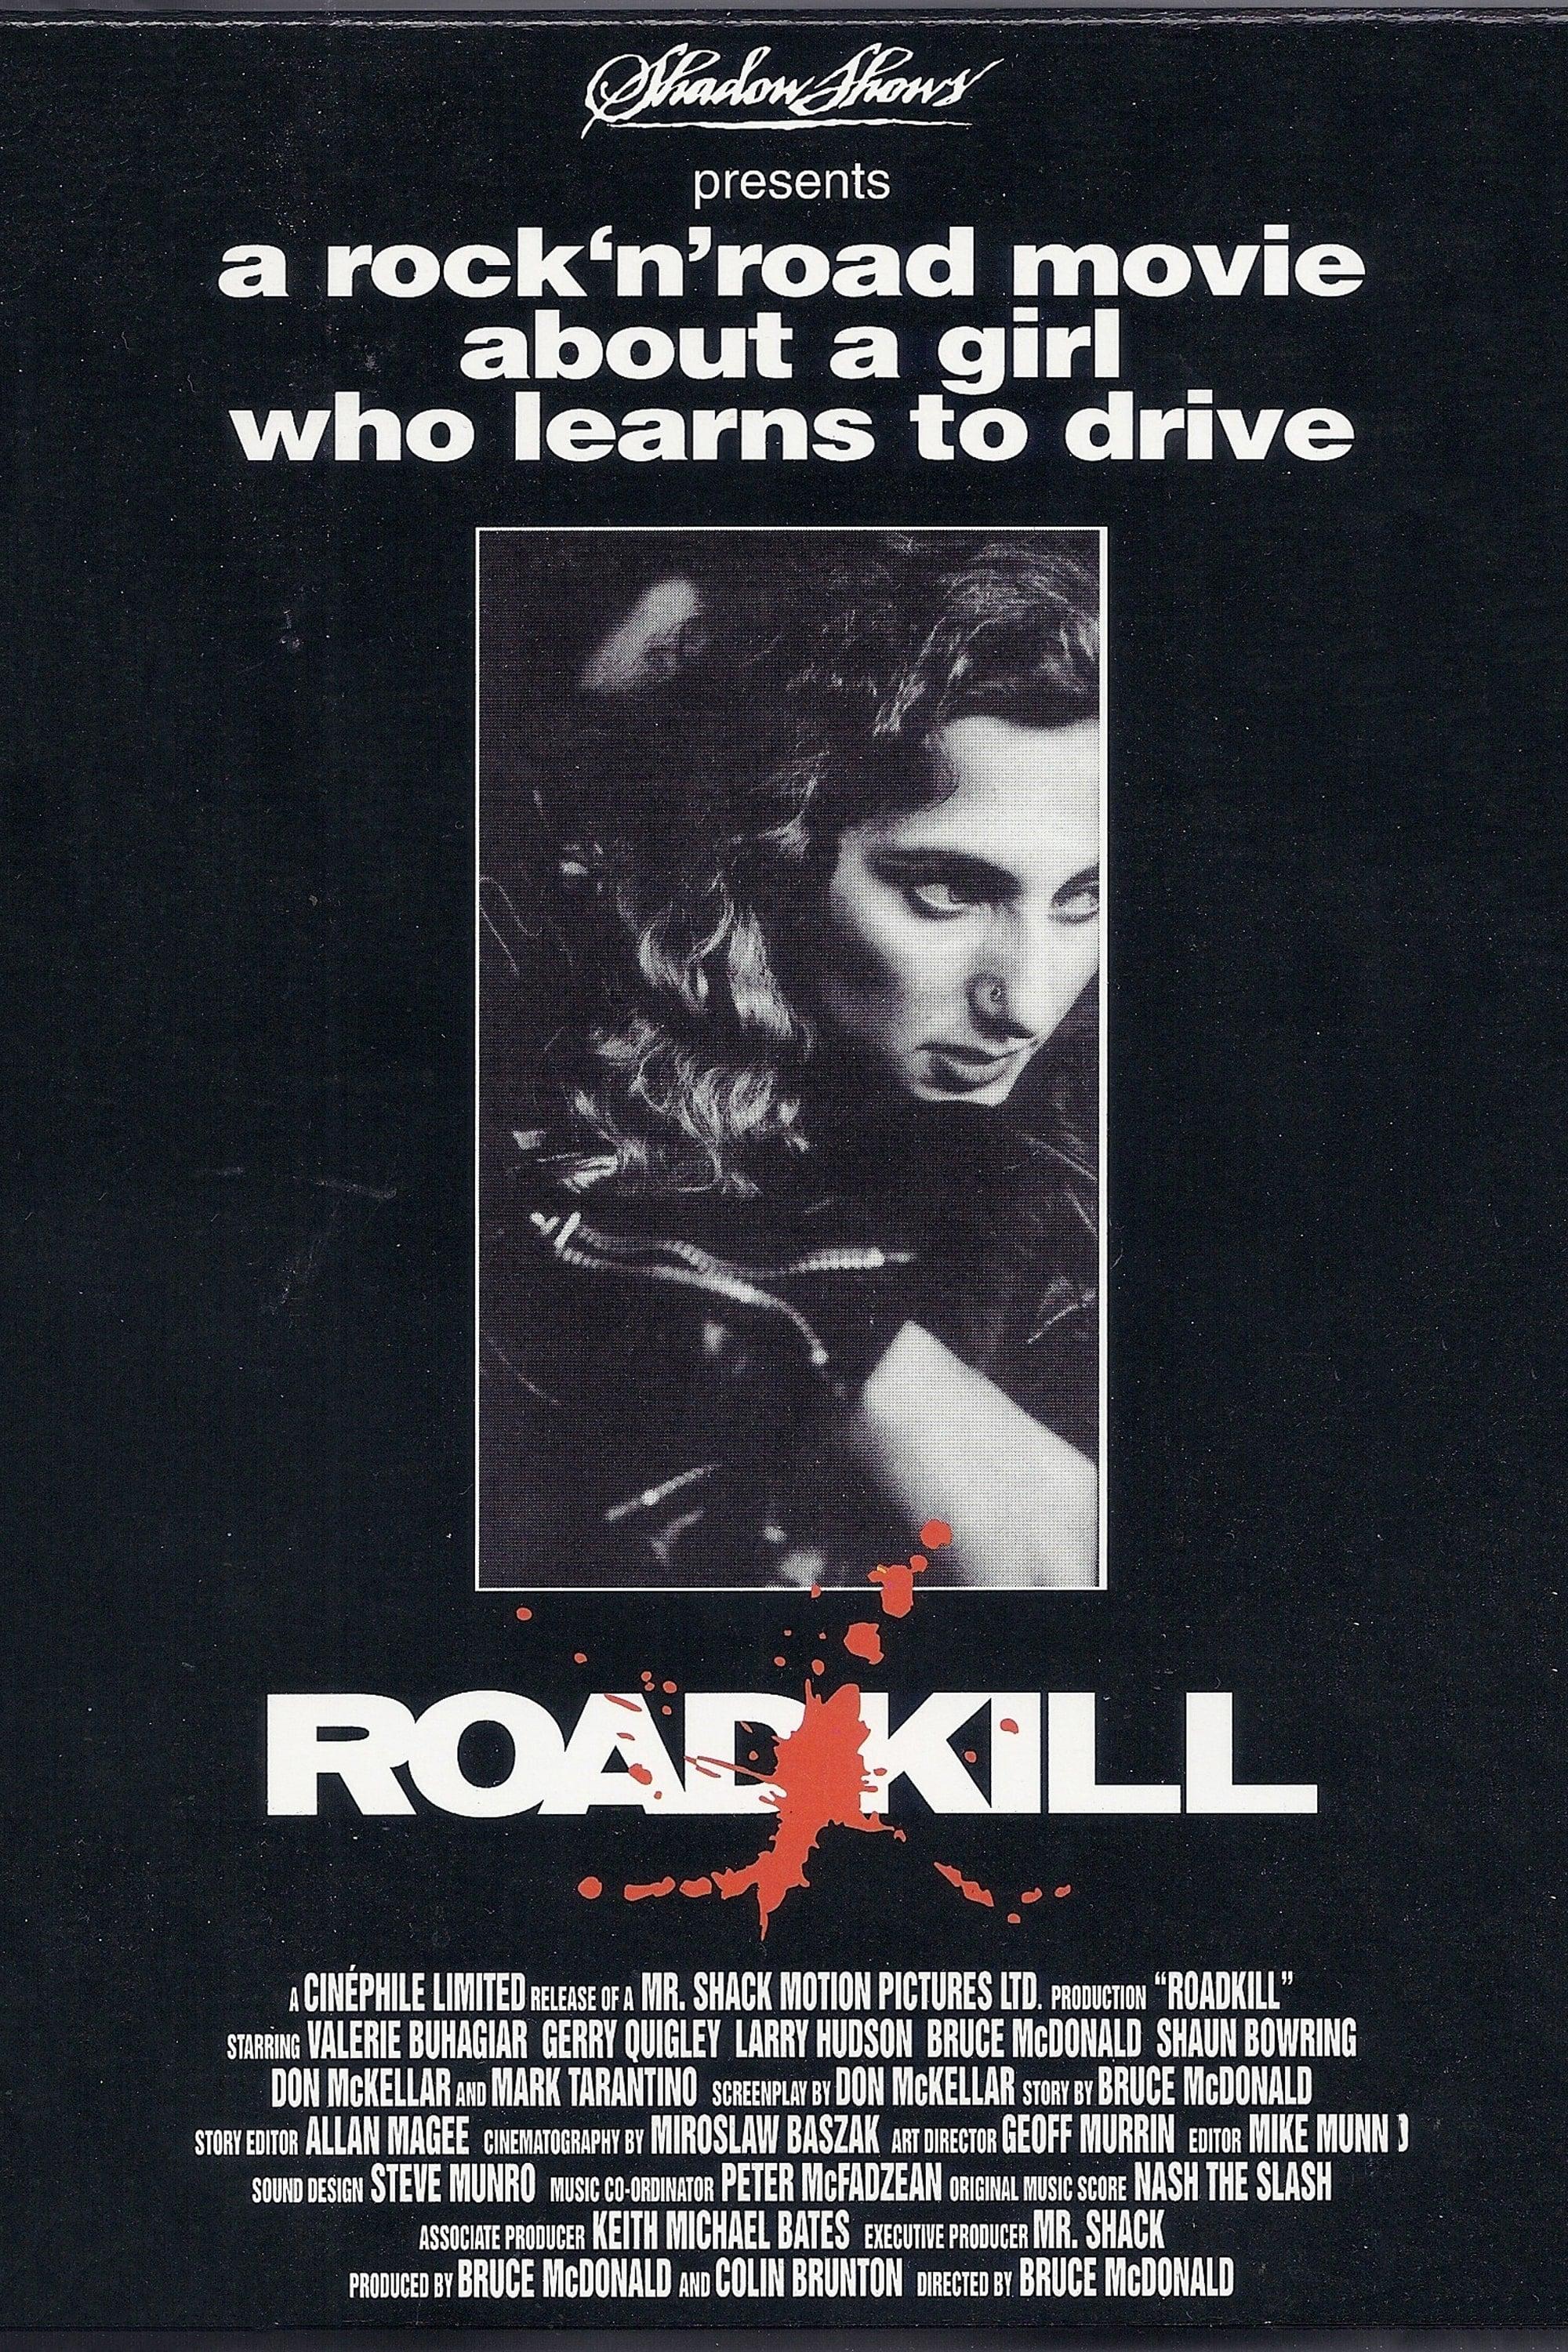 Roadkill poster